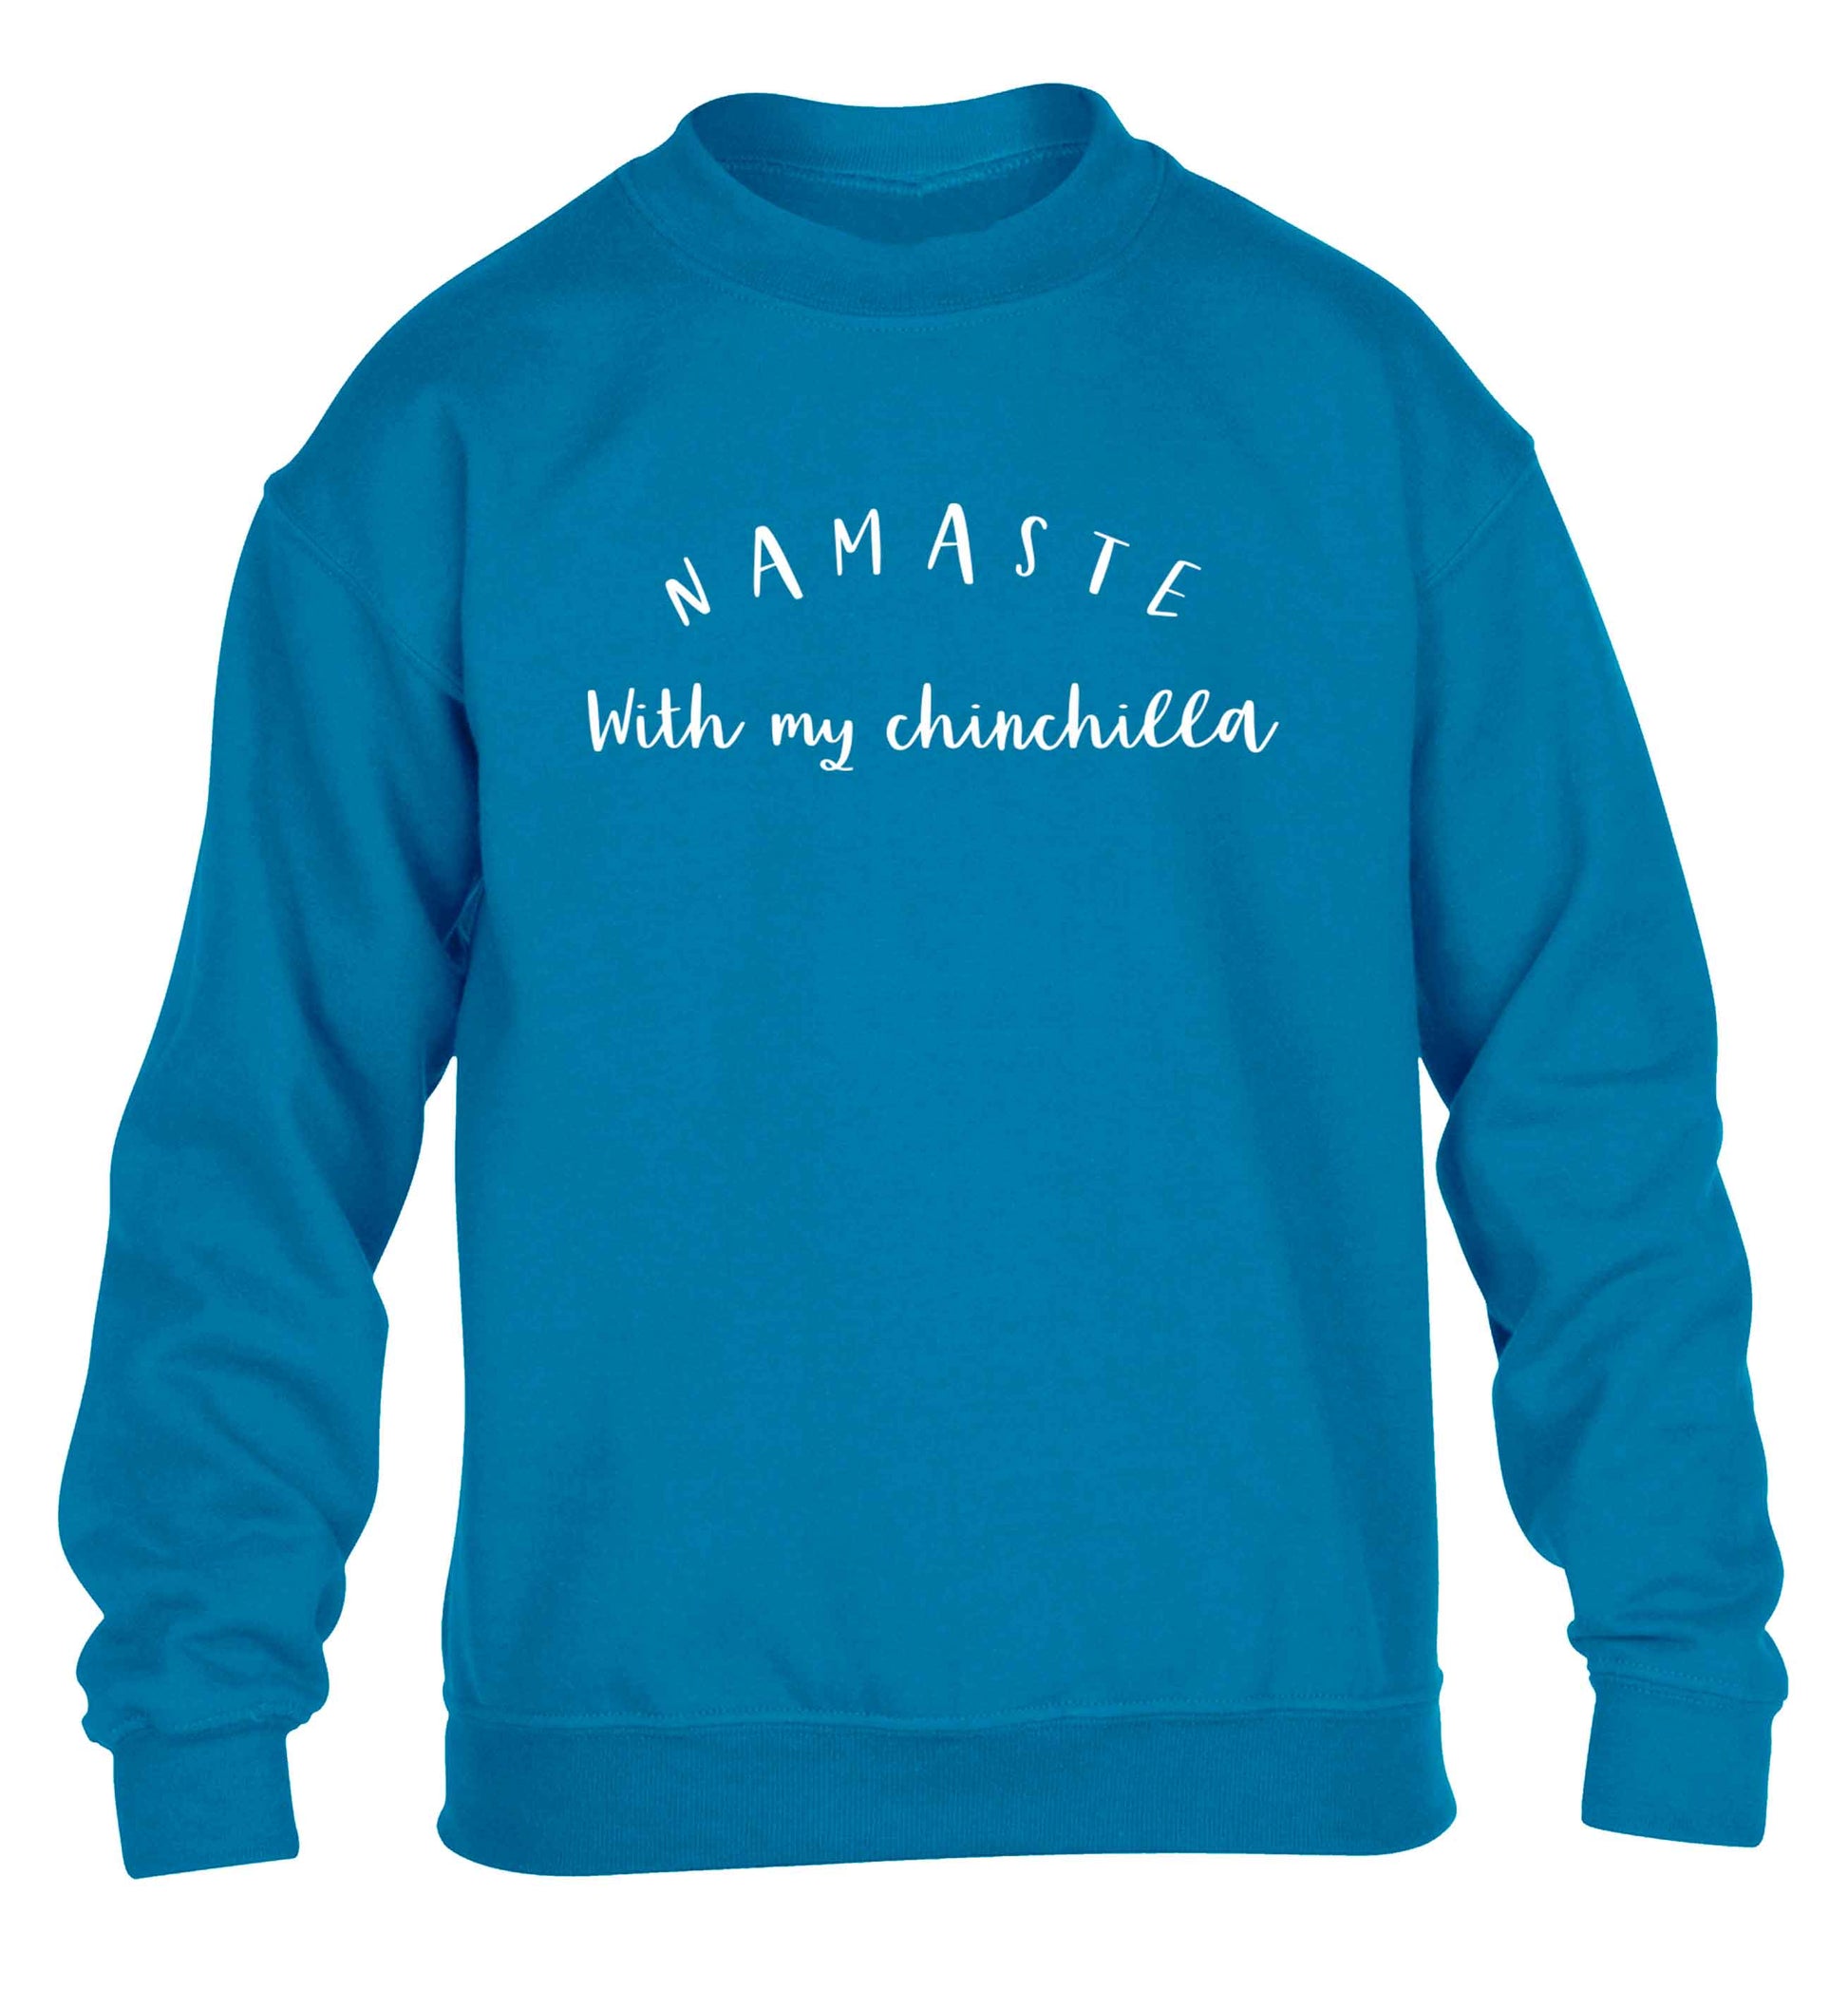 Namaste with my chinchilla children's blue sweater 12-13 Years